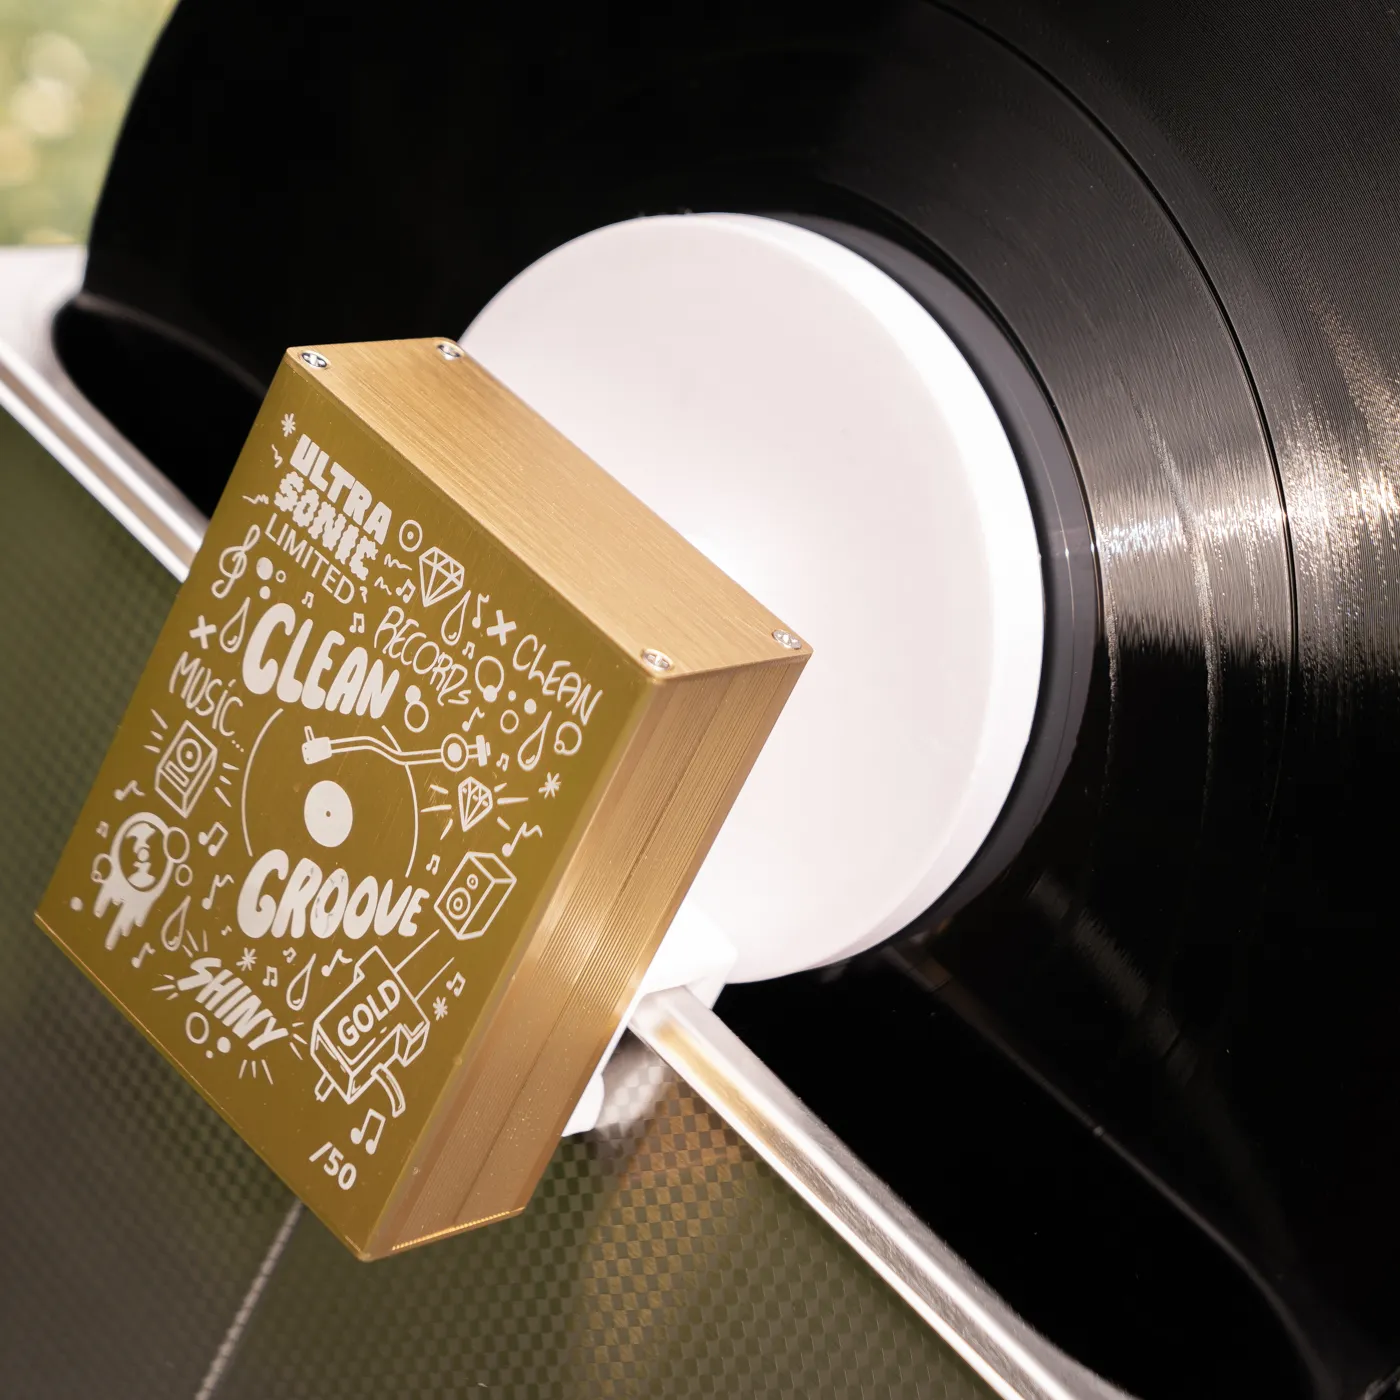 Nettoyage disques vinyles ultrasons • Trou Noir Disques